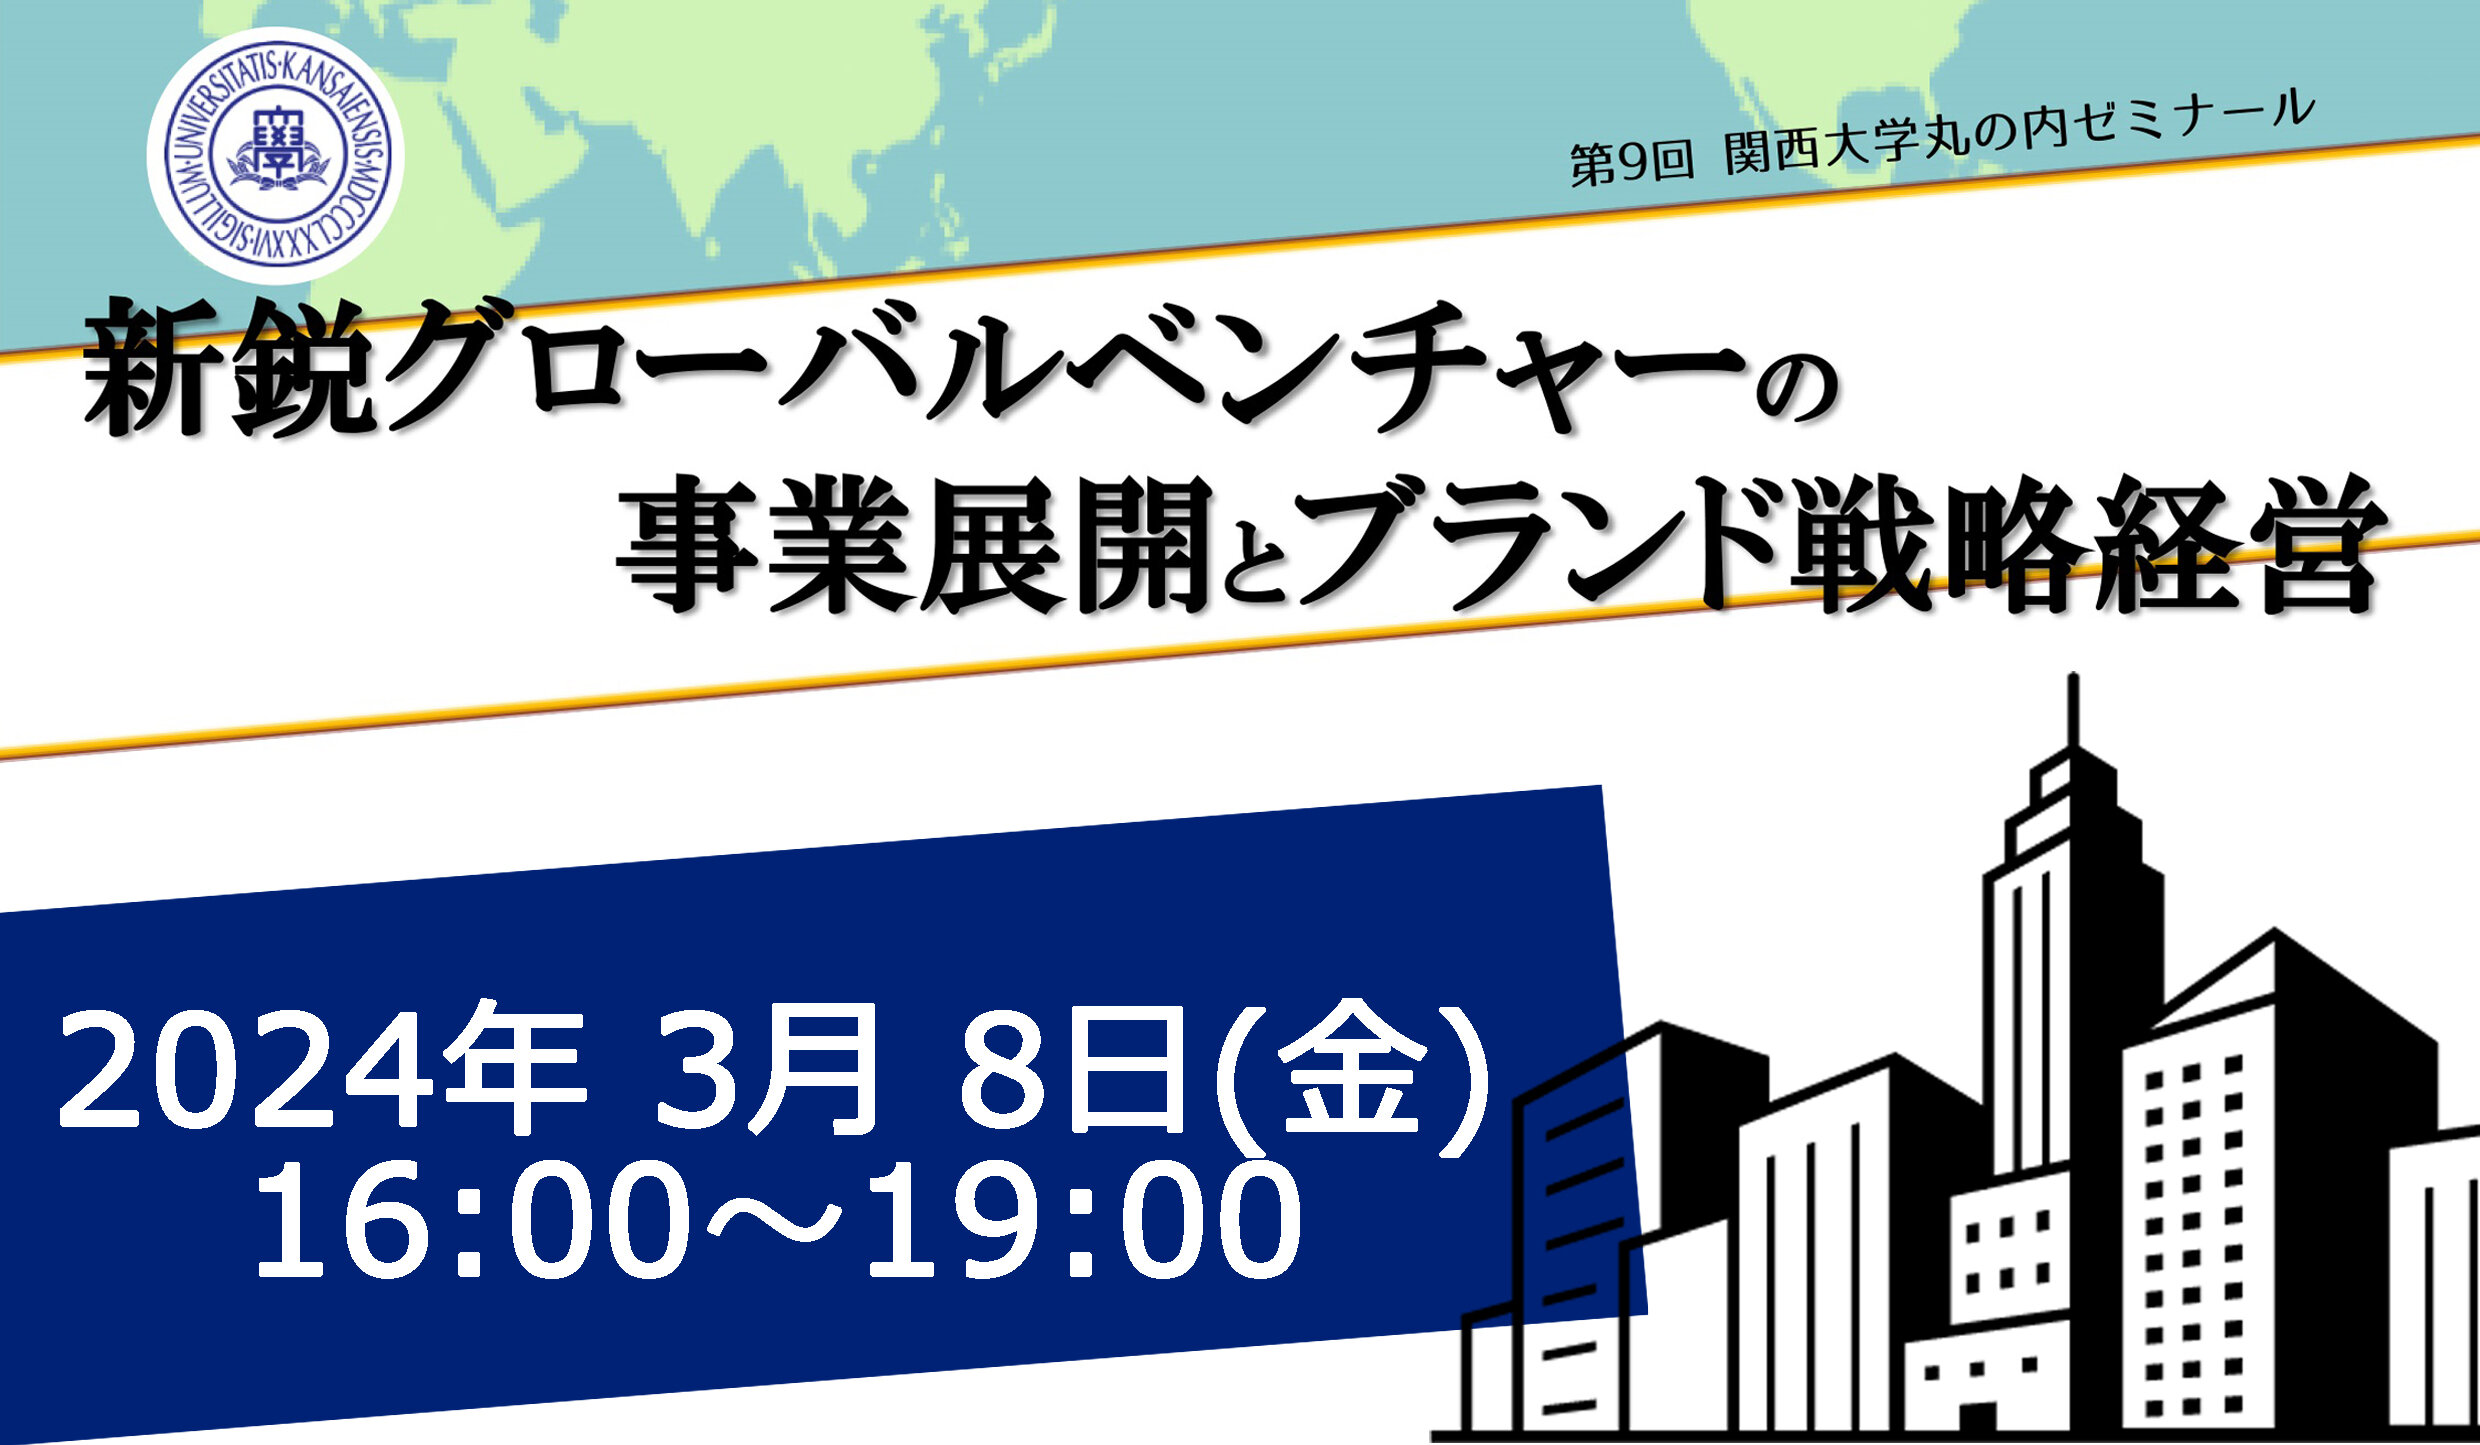 3/8 (金)「第9回関西大学丸の内ゼミナール」を開催します！